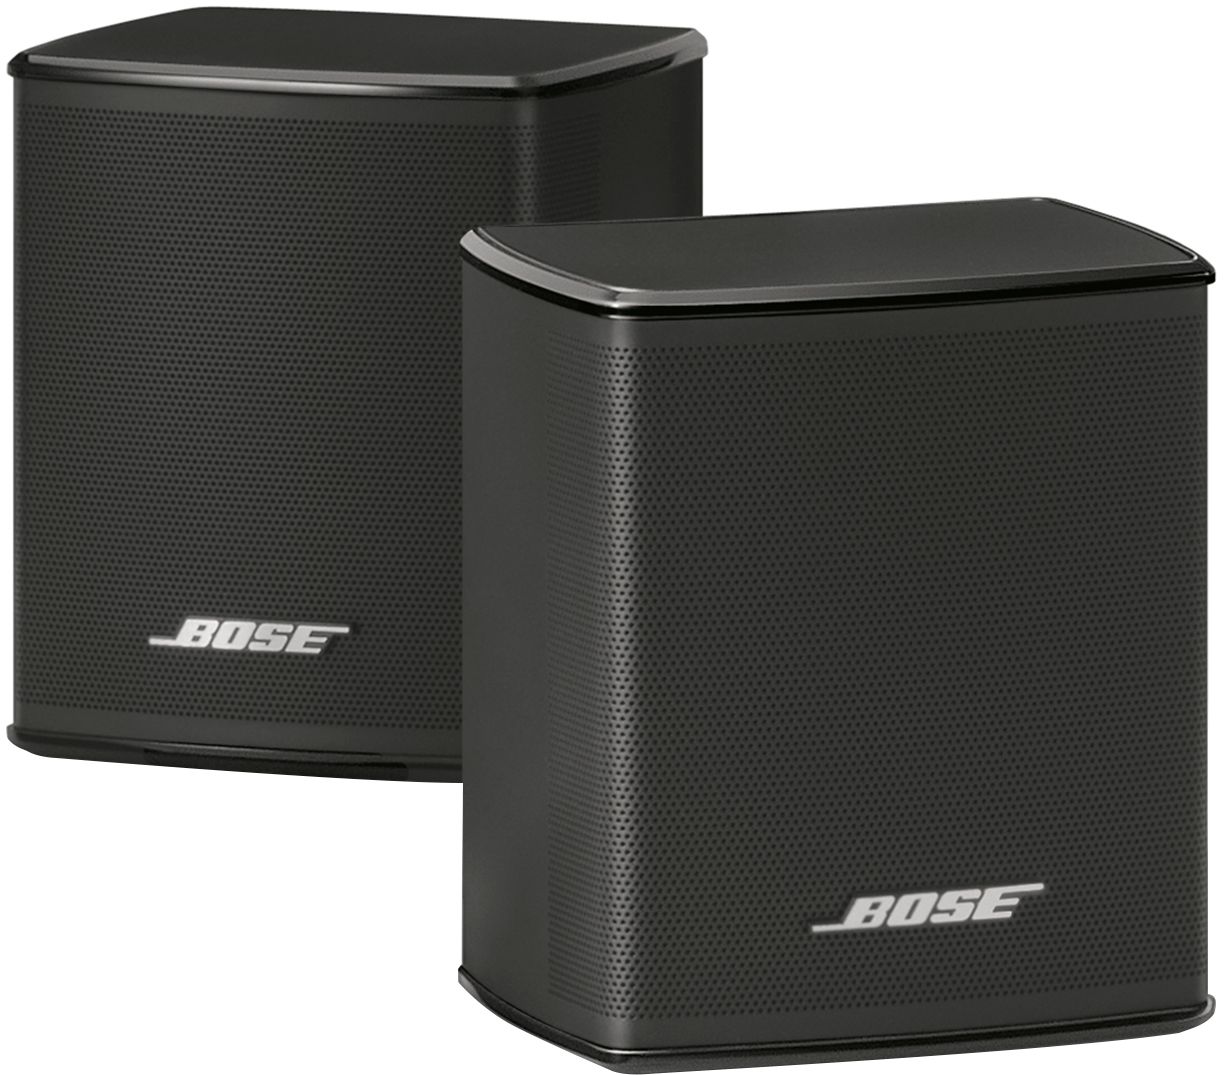 Bose Surround Speakers 120-Watt Wireless Home Theater Speakers 